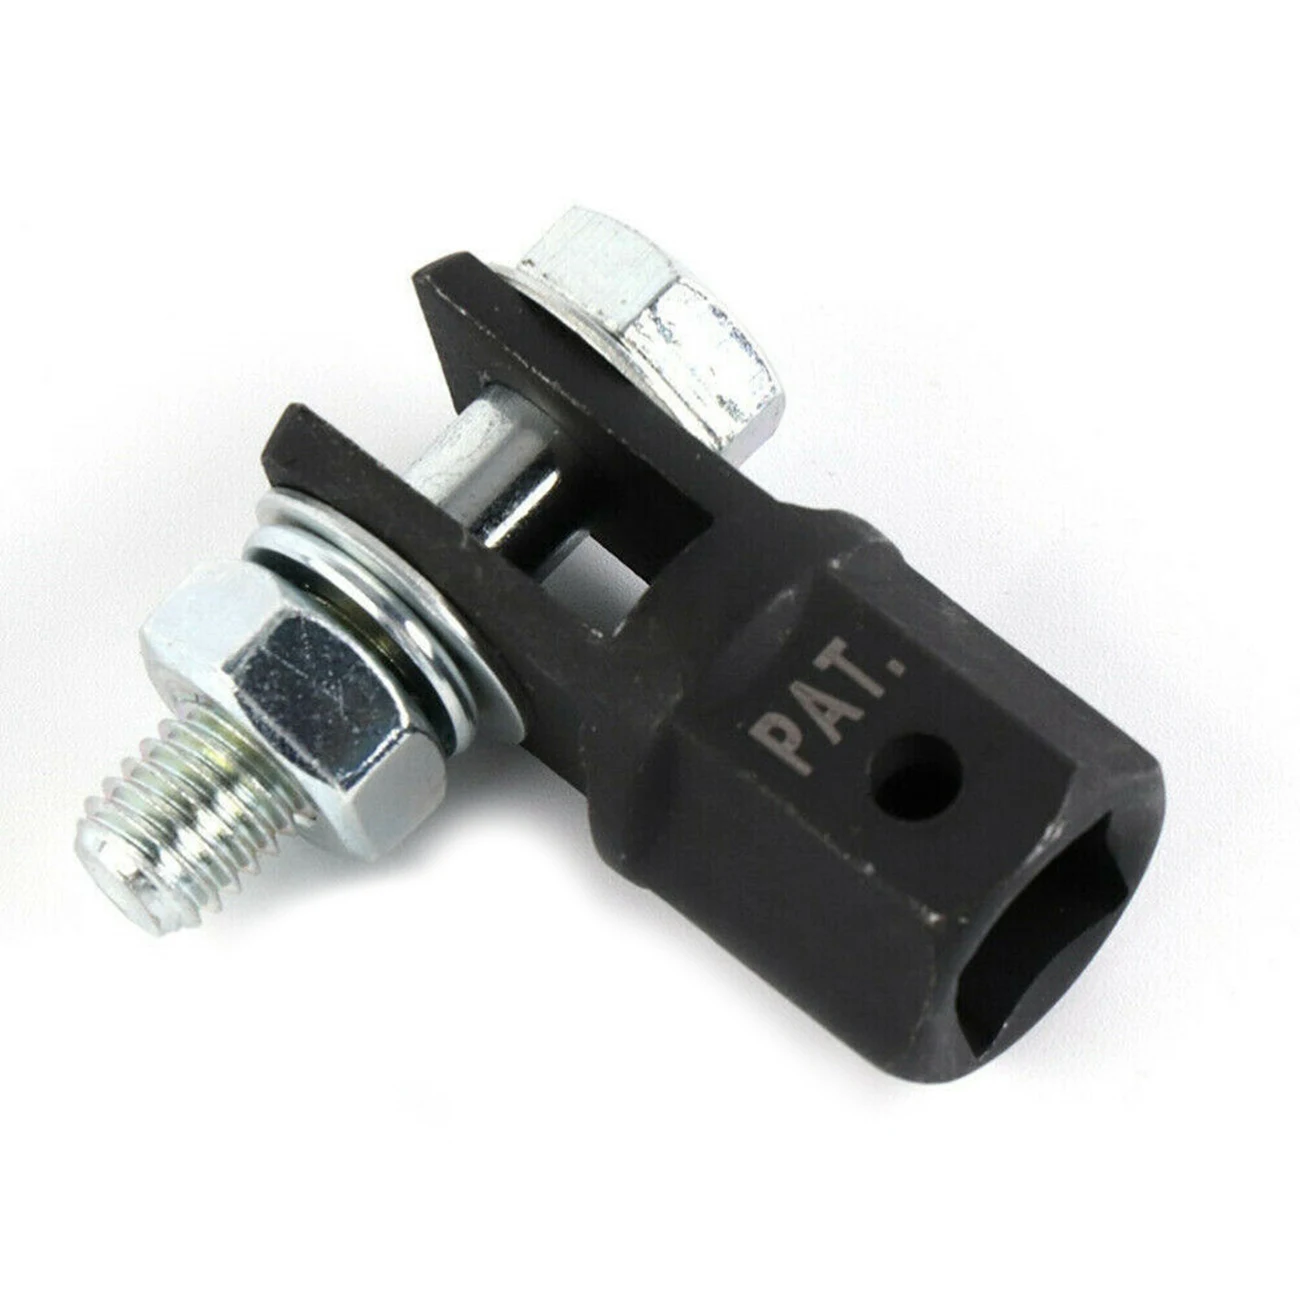 

Ножничный адаптер 1/2 дюйма для использования с приводом 1/2 дюйма или ударным гаечным ключом инструменты IJA001 инструмент для ремонта автомобиля Новинка